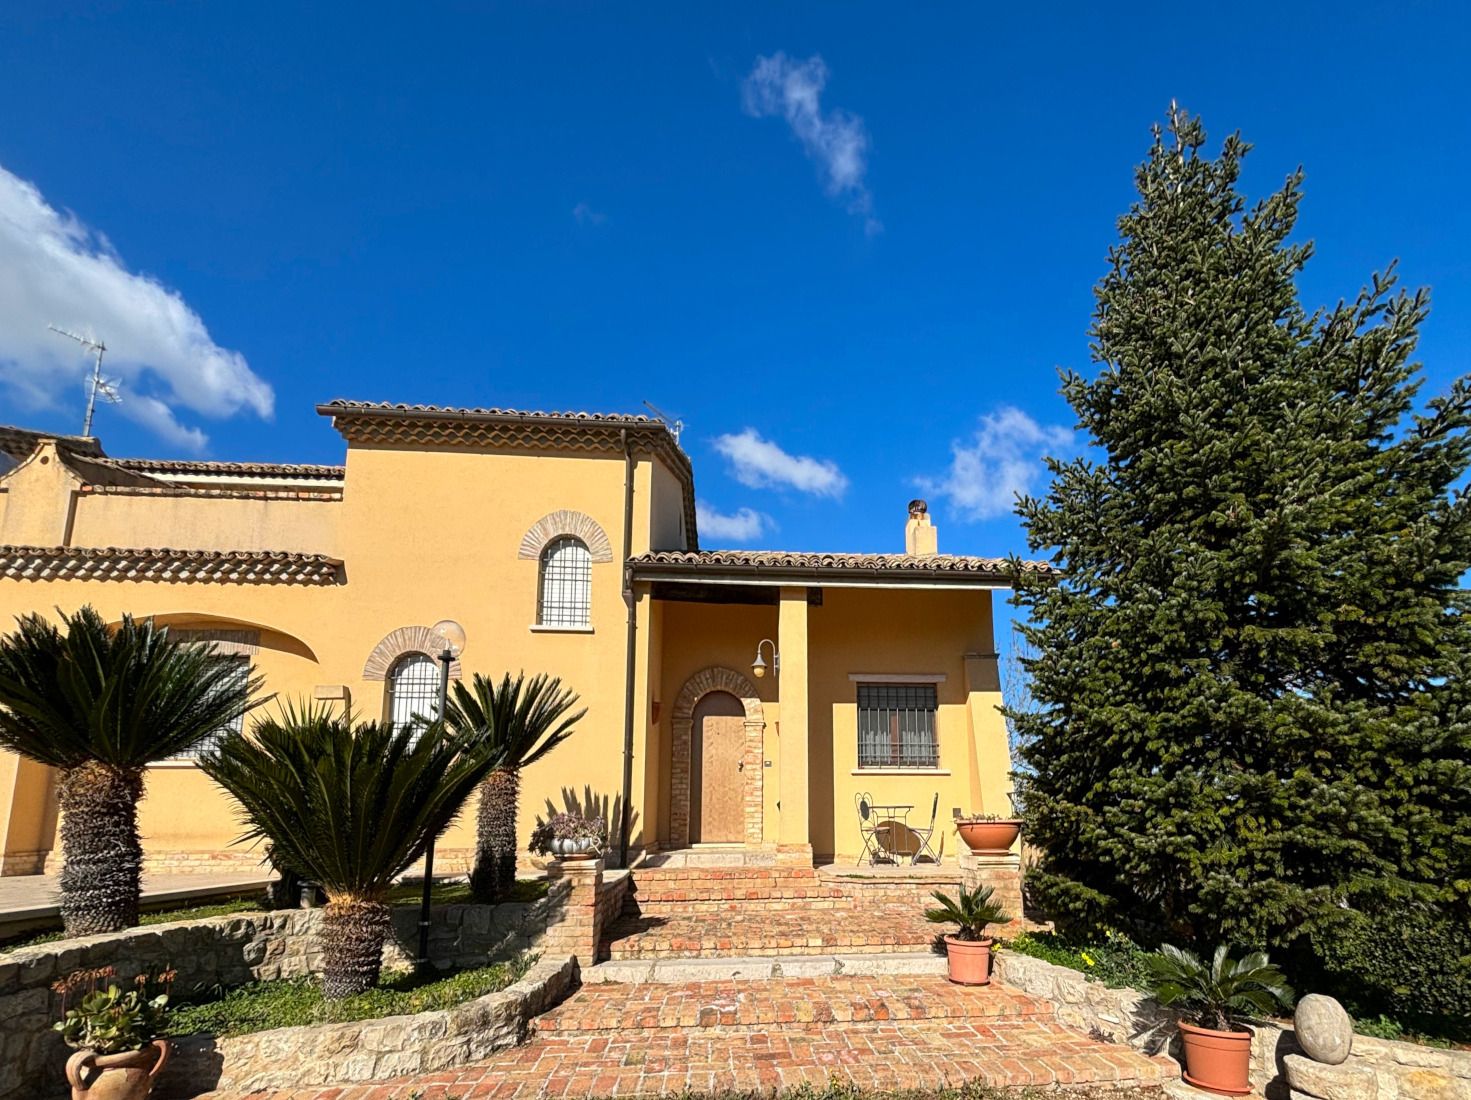 For sale villa in quiet zone Guglionesi Molise